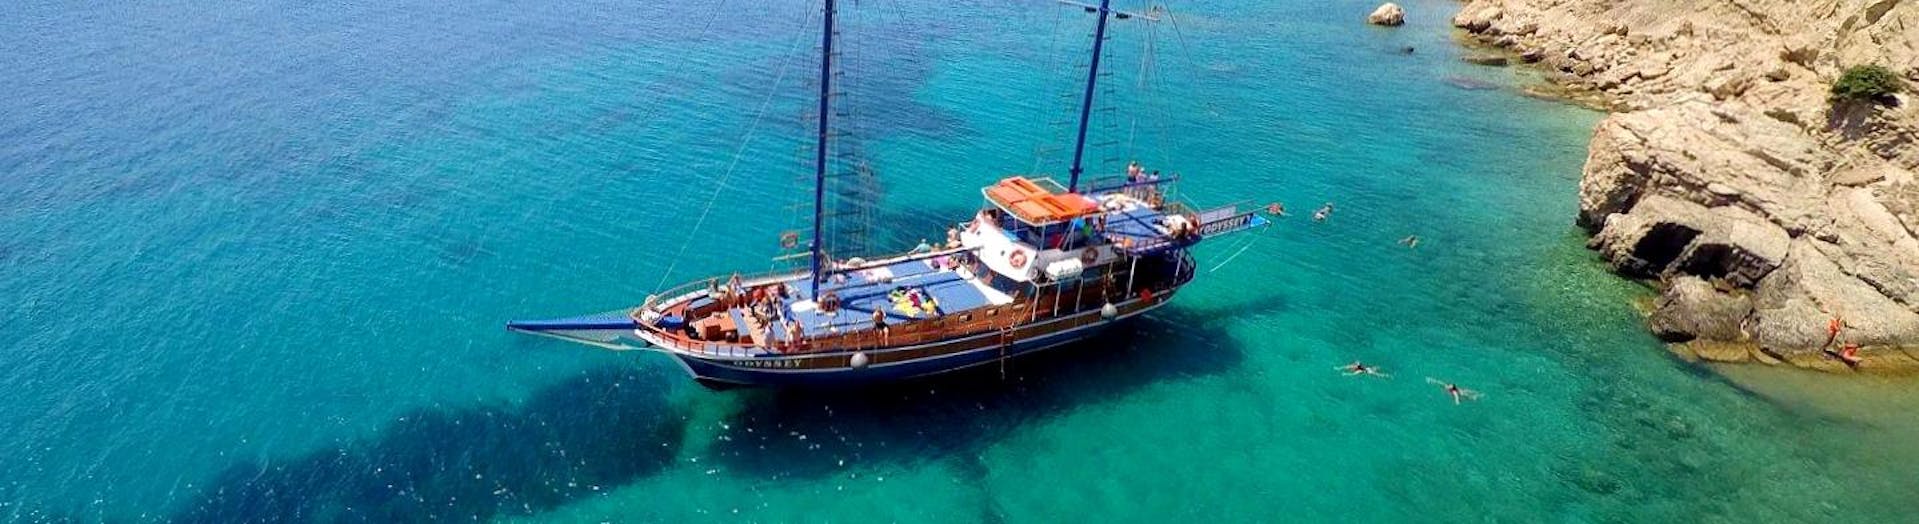 Un elegante velero con participantes disfrutando de un día en las aguas griegas durante un viaje en velero a las islas Kalymnos, Plati y Pserimos con Odyssey Boat Kos.